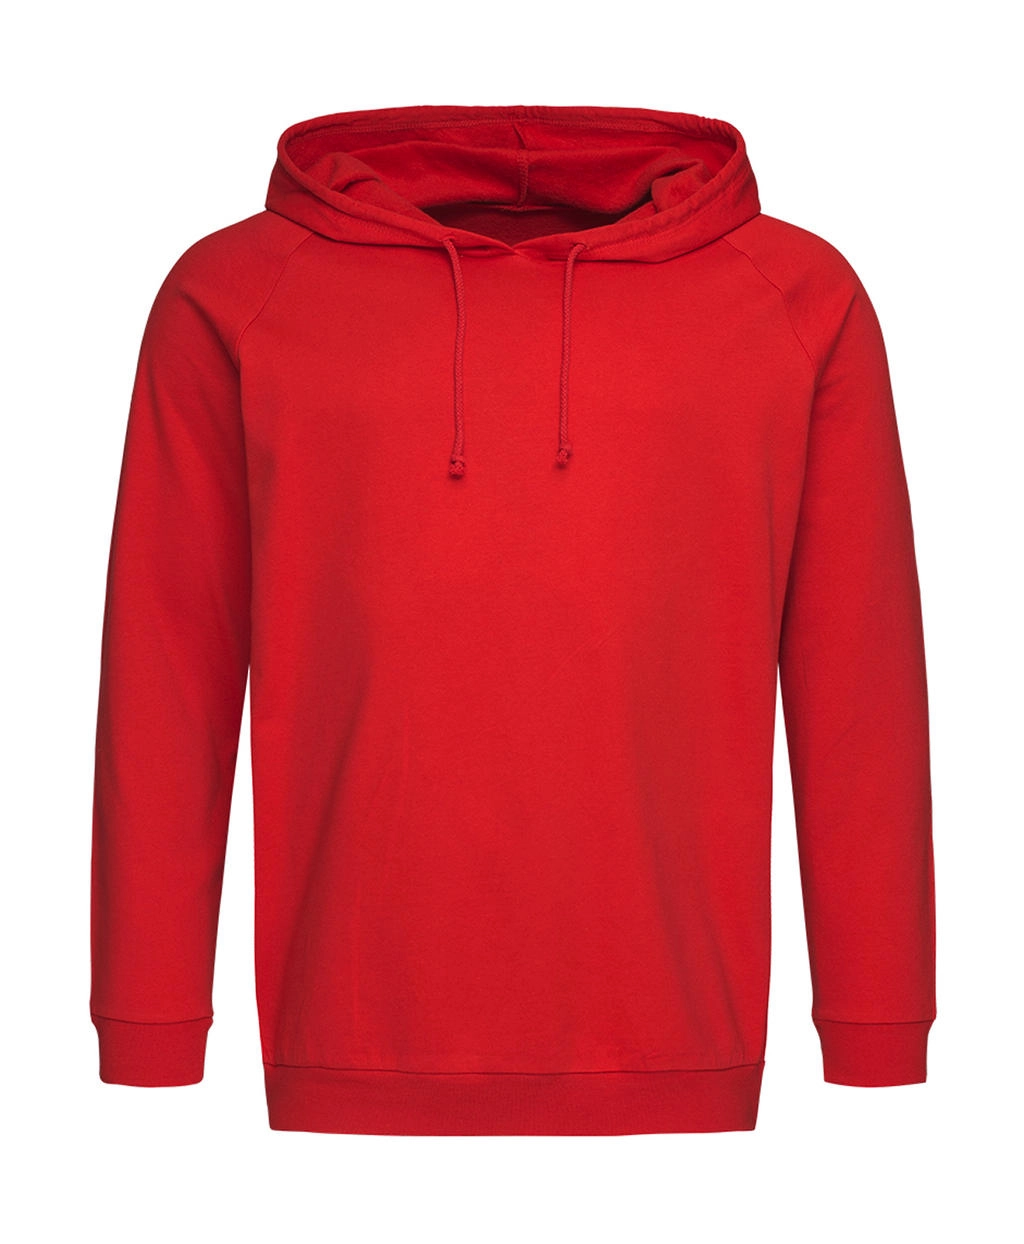 Unisex Sweat Hoodie Light zum Besticken und Bedrucken in der Farbe Scarlet Red mit Ihren Logo, Schriftzug oder Motiv.